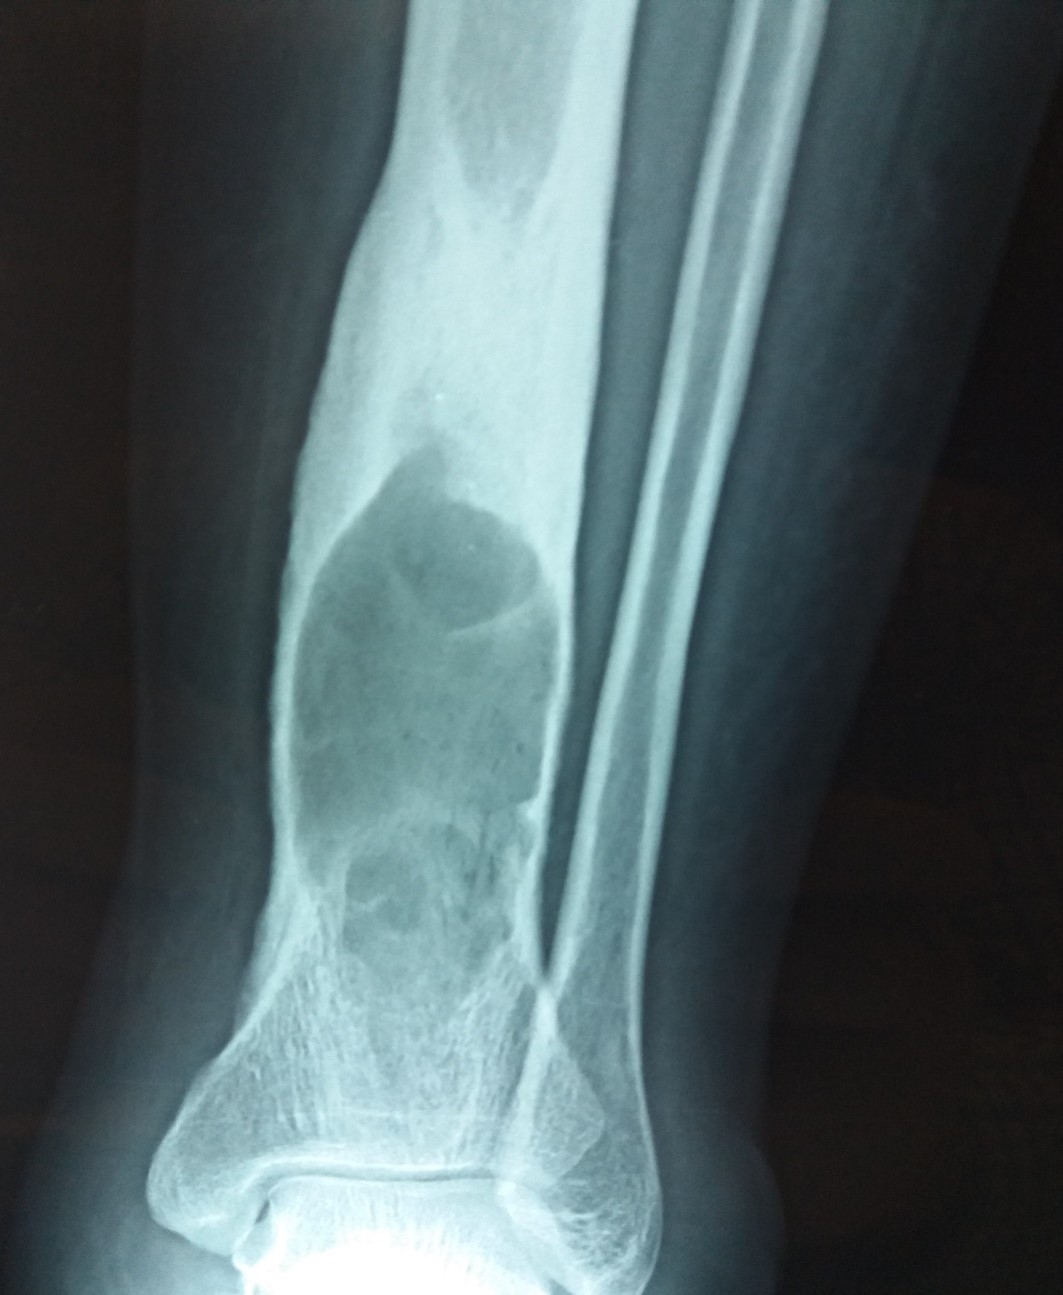 Pathology Outlines Chronic Osteomyelitis